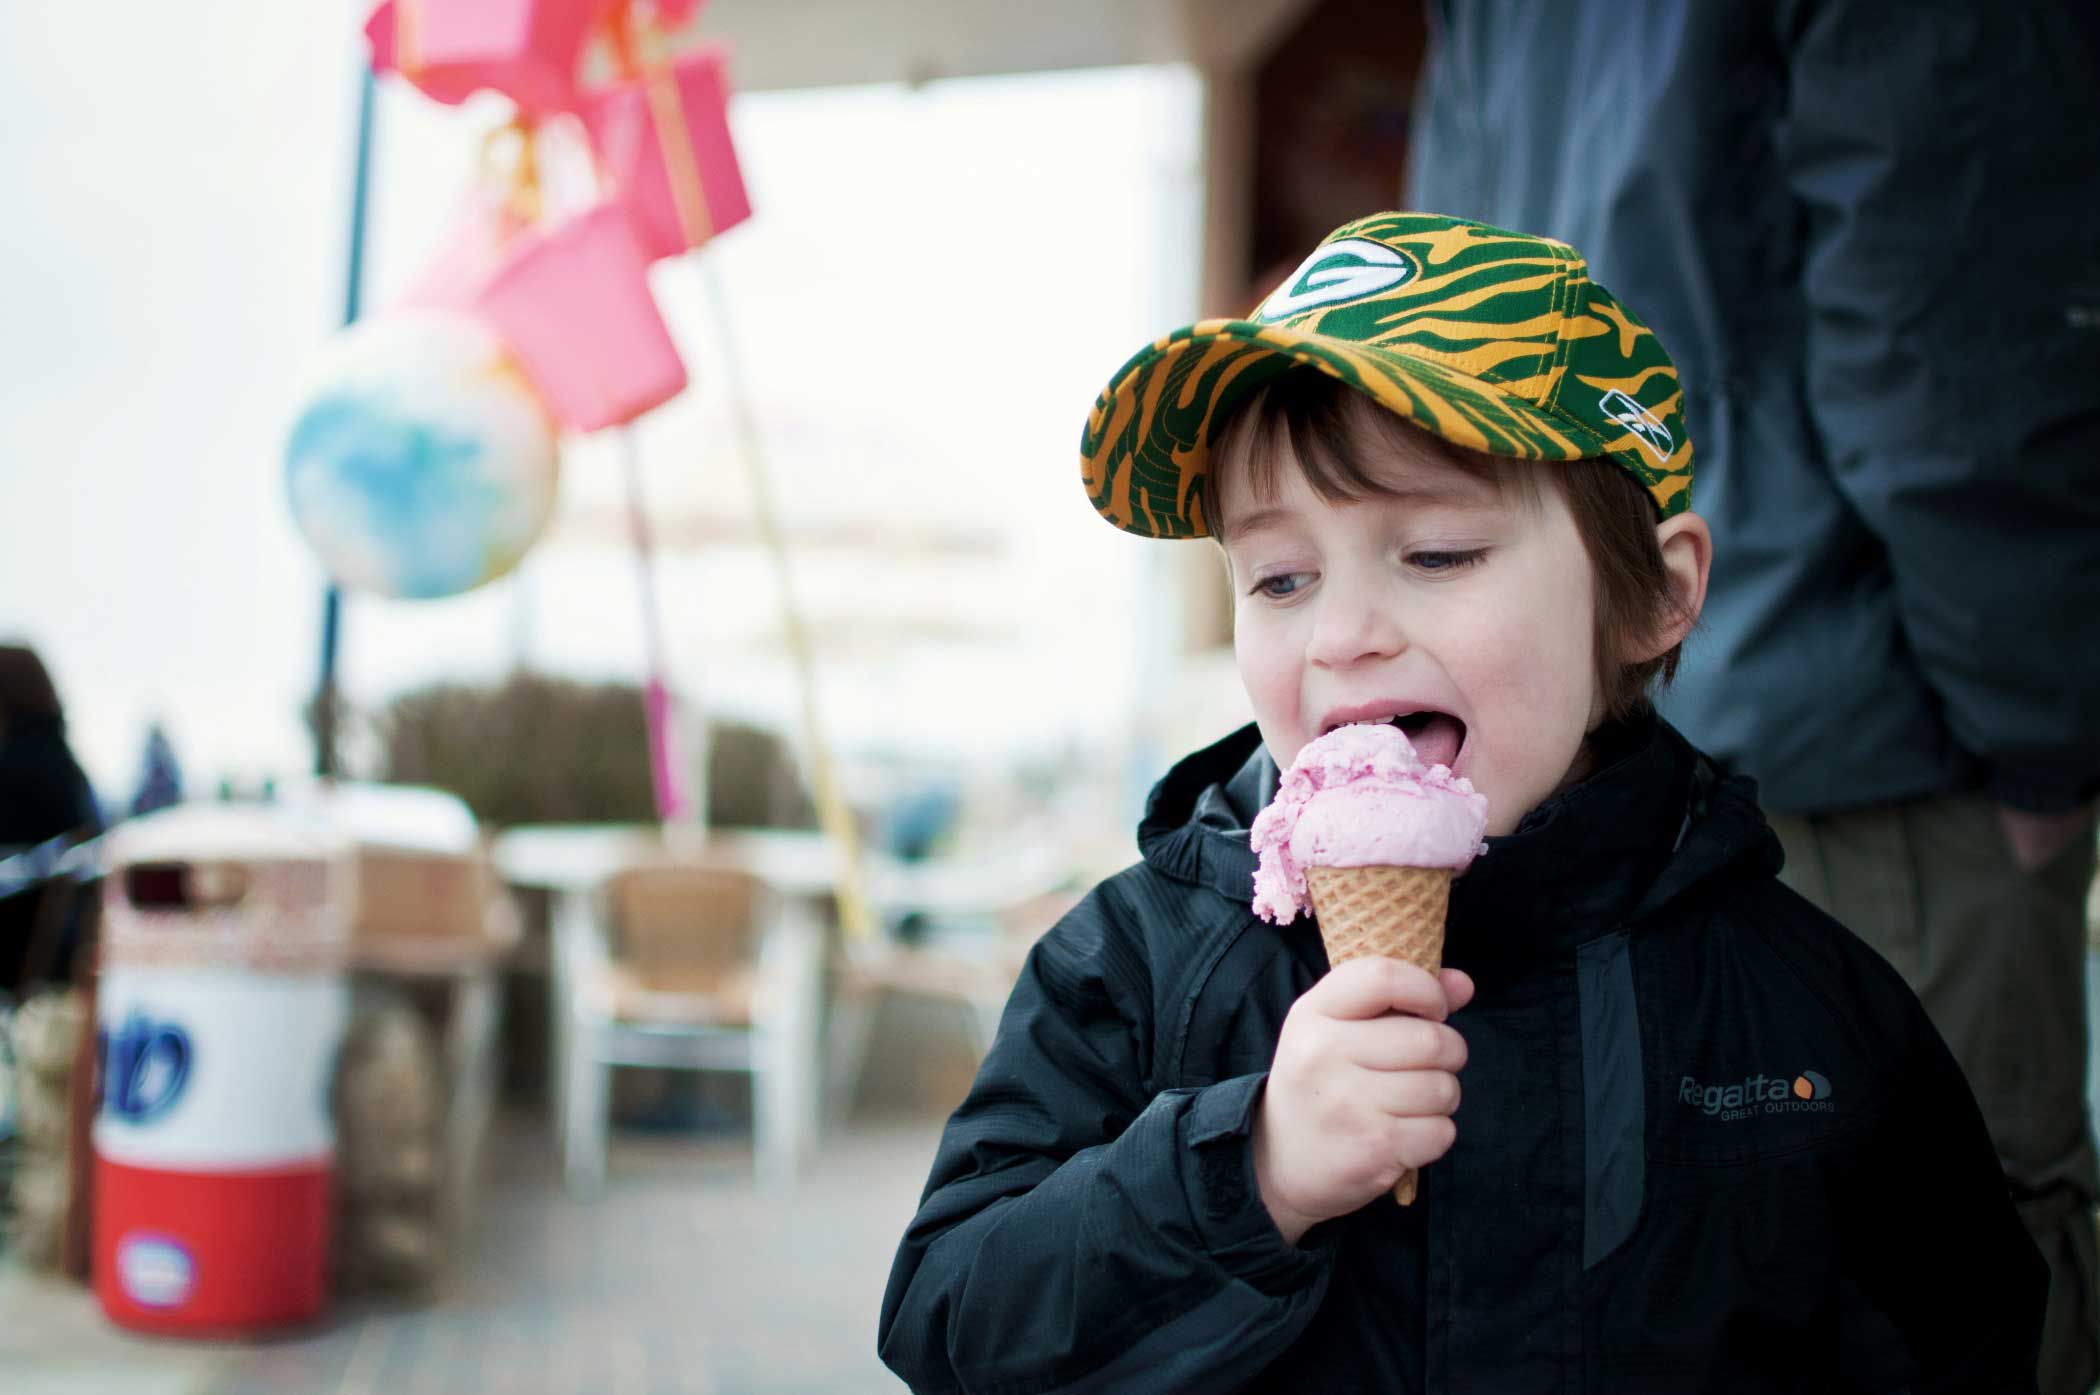 بستنی می تواند برای کودکان جایگزین شیر و پنیر باشد؟